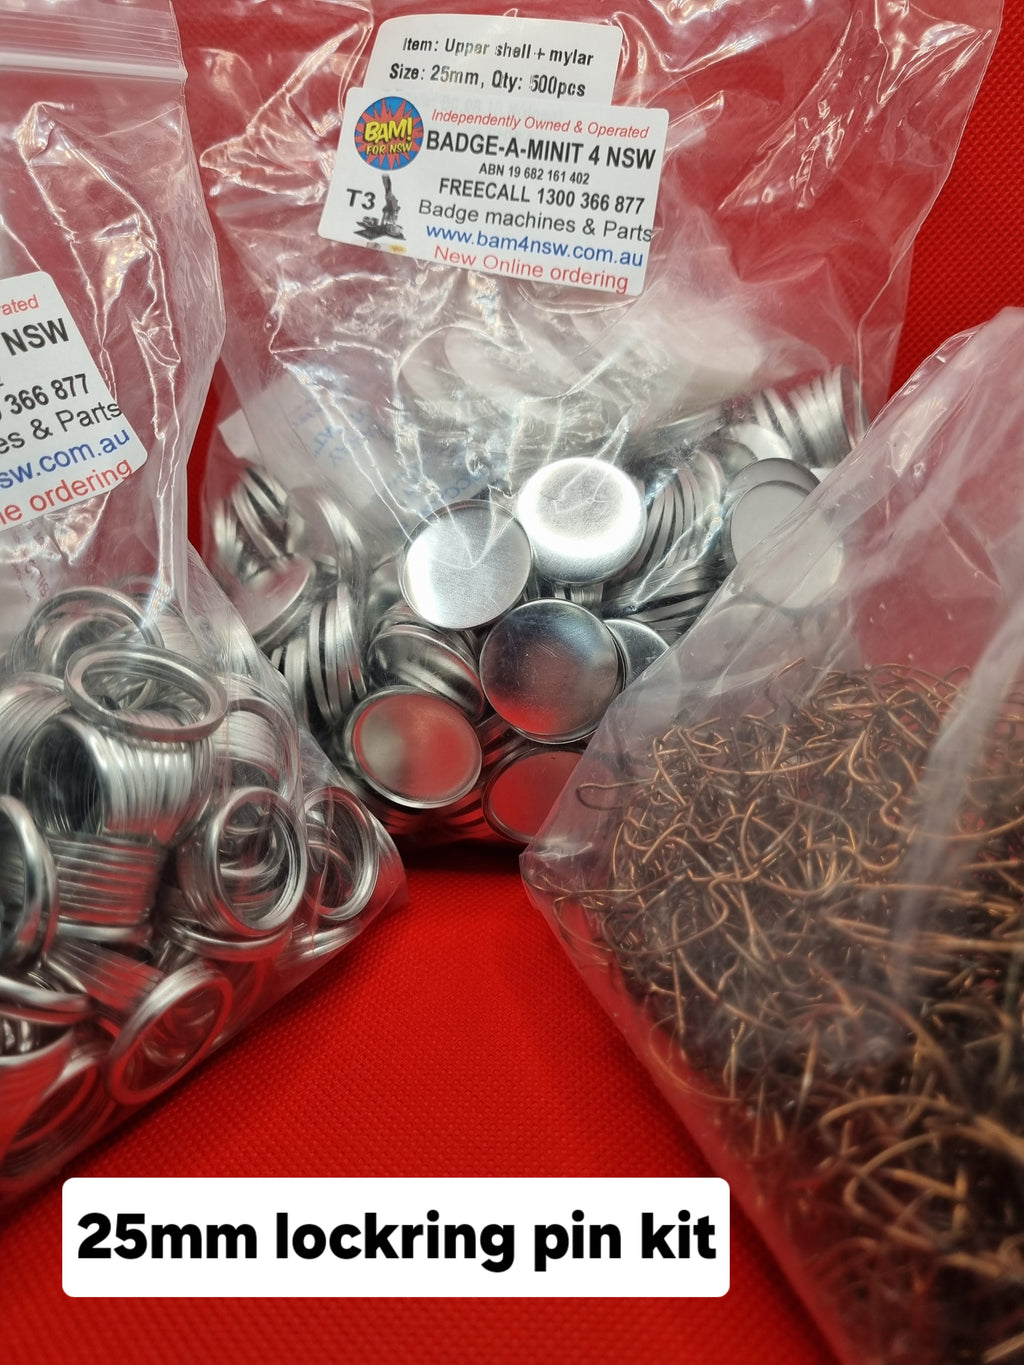 25mm lockring pin kit for badge making